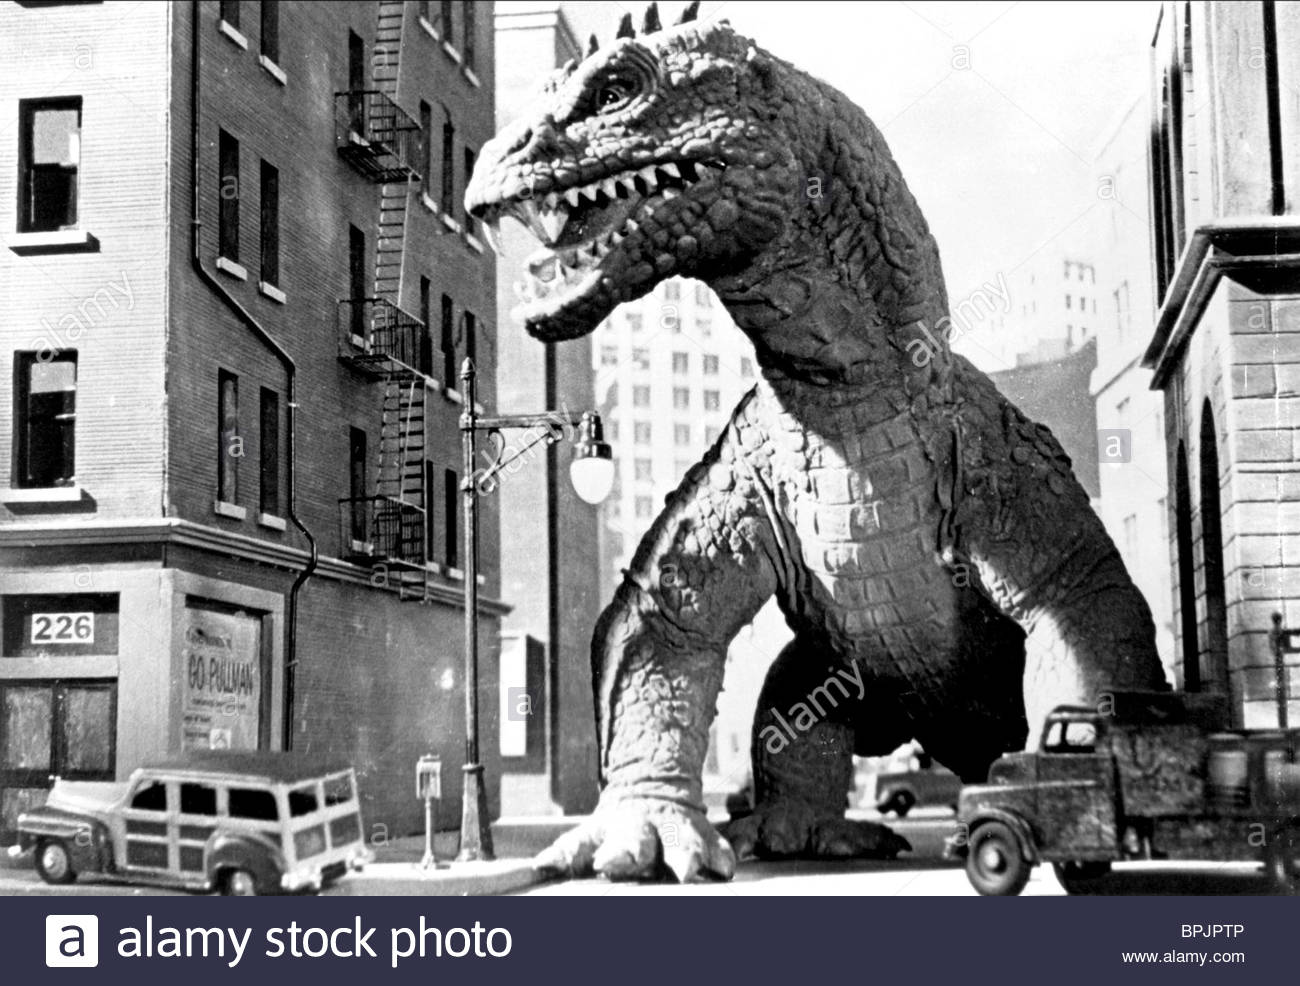 monster-the-beast-from-20-000-fathoms-1953-BPJPTP.jpg